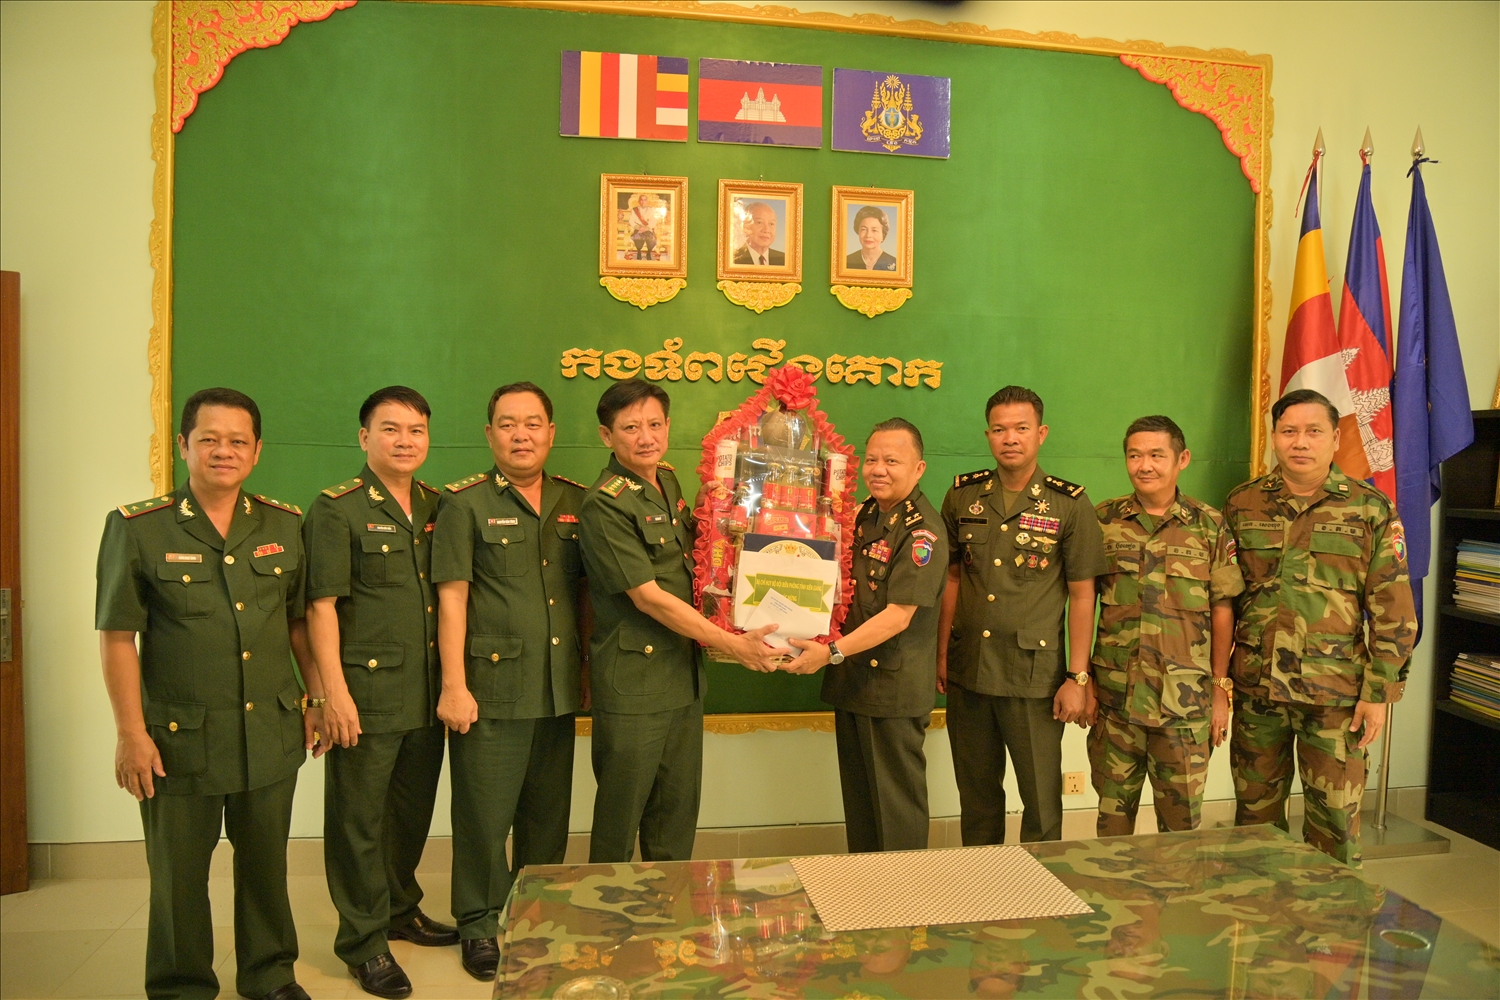  Đại tá Võ Văn Sử, Tỉnh ủy viên, Chỉ huy trưởng BĐBP Kiên Giang thăm, tặng quà Cục Biên phòng - Bộ tư lệnh Lục quân Hoàng gia Campuchia.